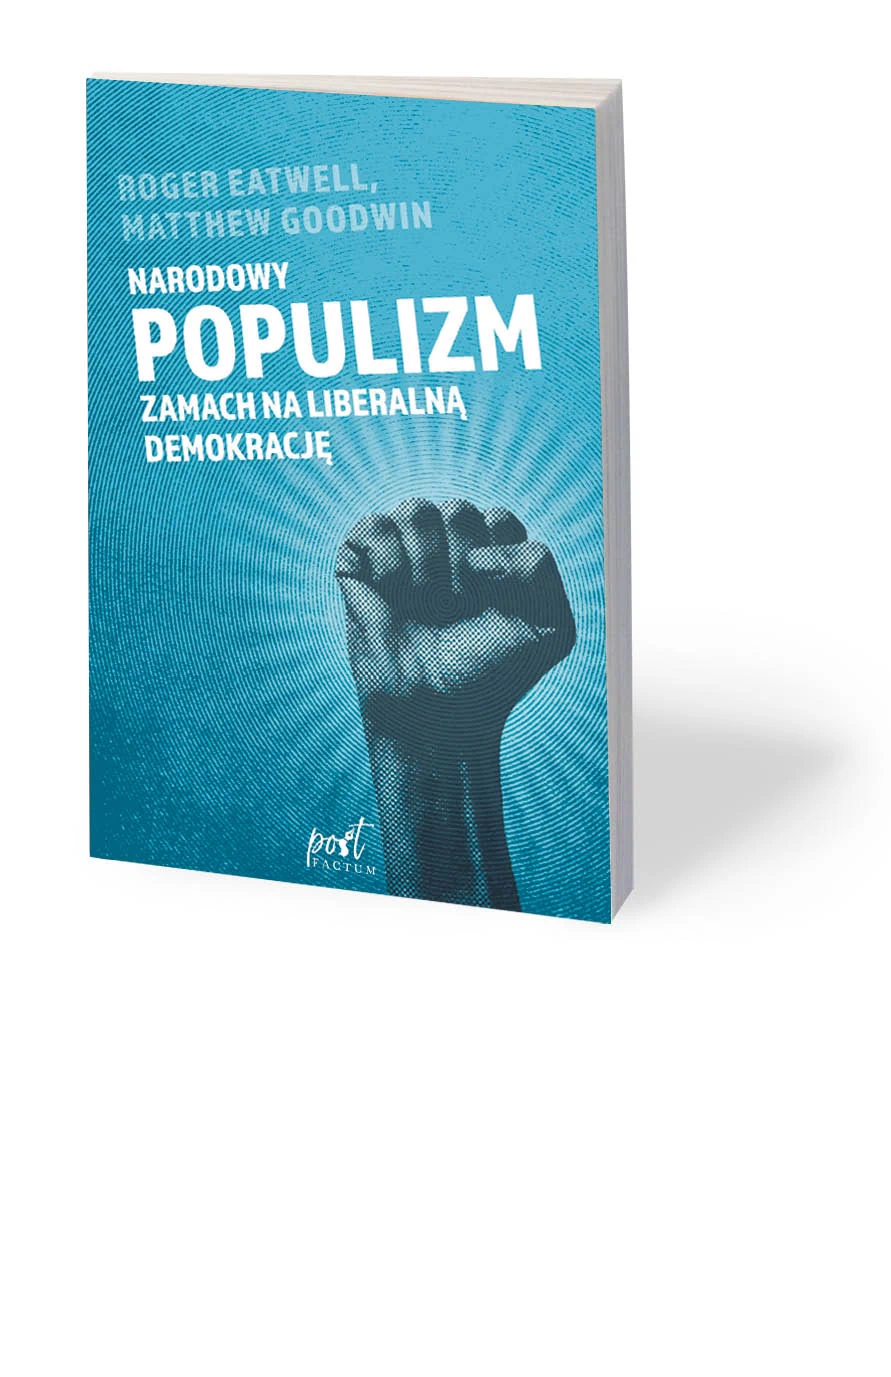 Woś: O populizmie na spokojnie [RECENZJA] - GazetaPrawna.pl